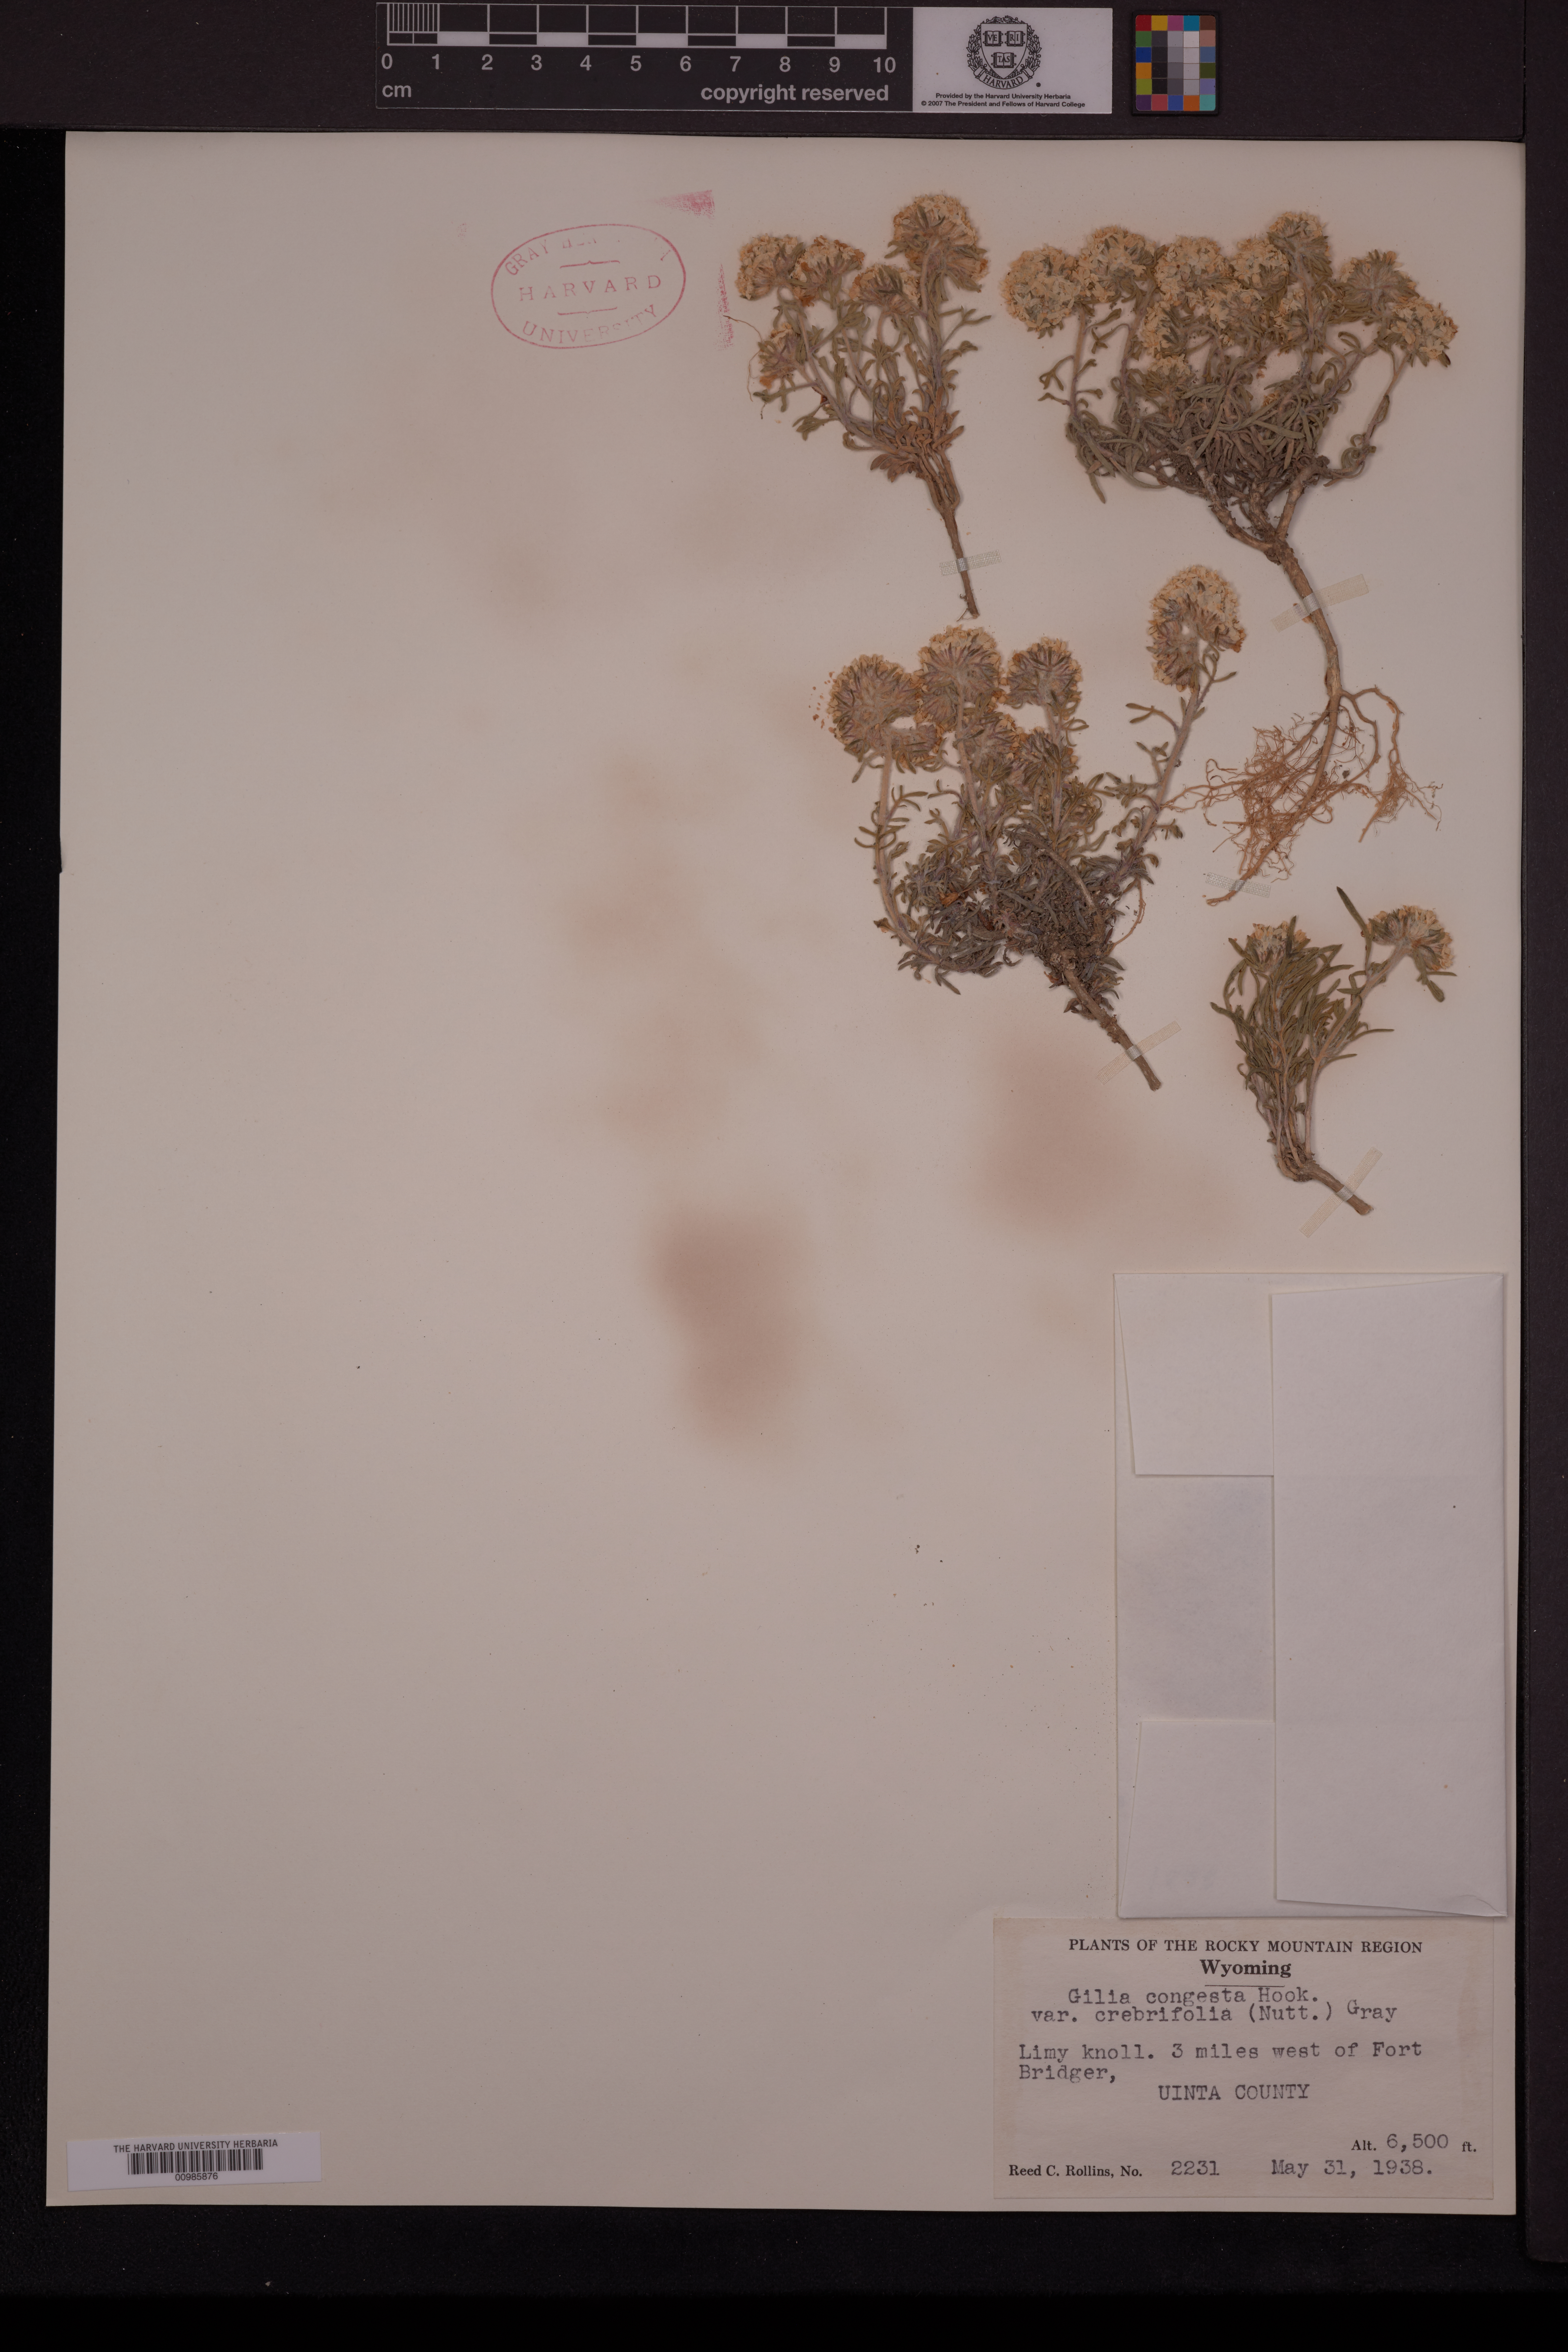 Ipomopsis congesta subsp. crebrifolia image